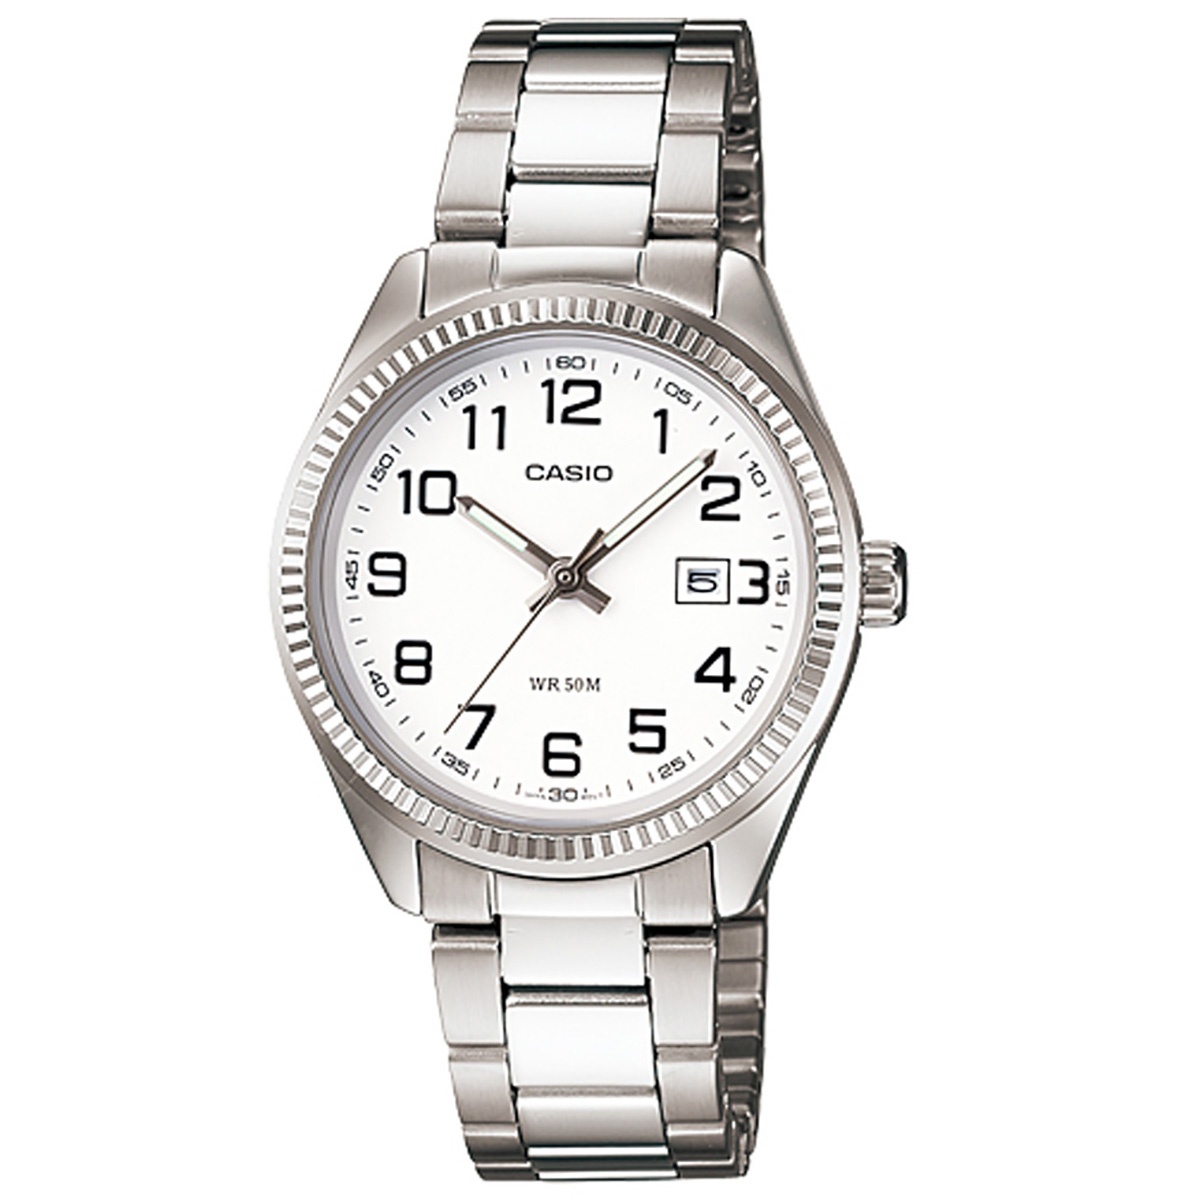 Casio Uhr Ltp 1302pd 7b Damen Armbanduhr Edelstahl Silber Weiss Datum Neu Ovp Ebay